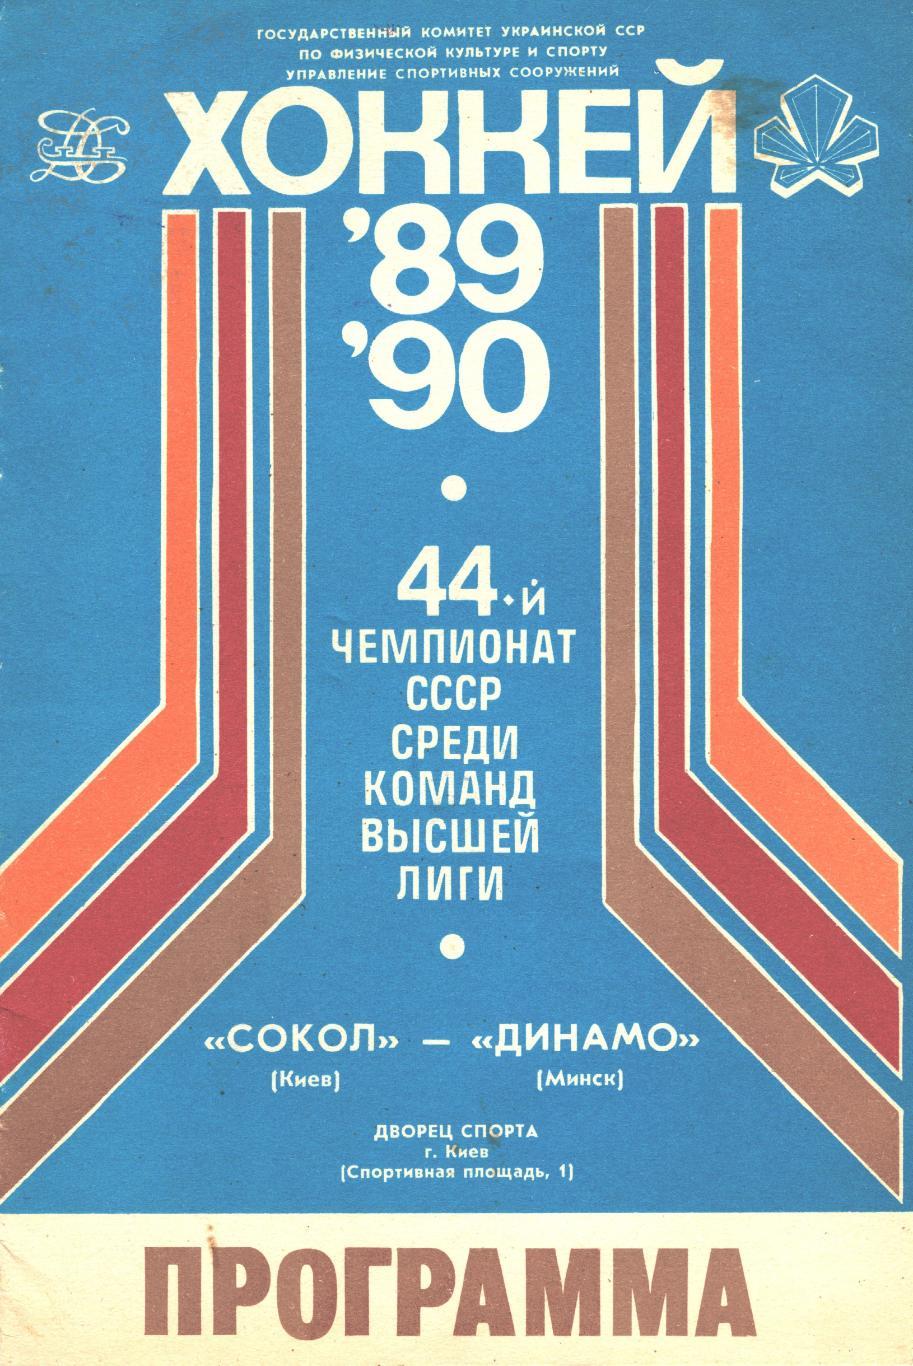 СОКОЛ (Киев) - ДИНАМО (Минск), 5 сентября 1989 года